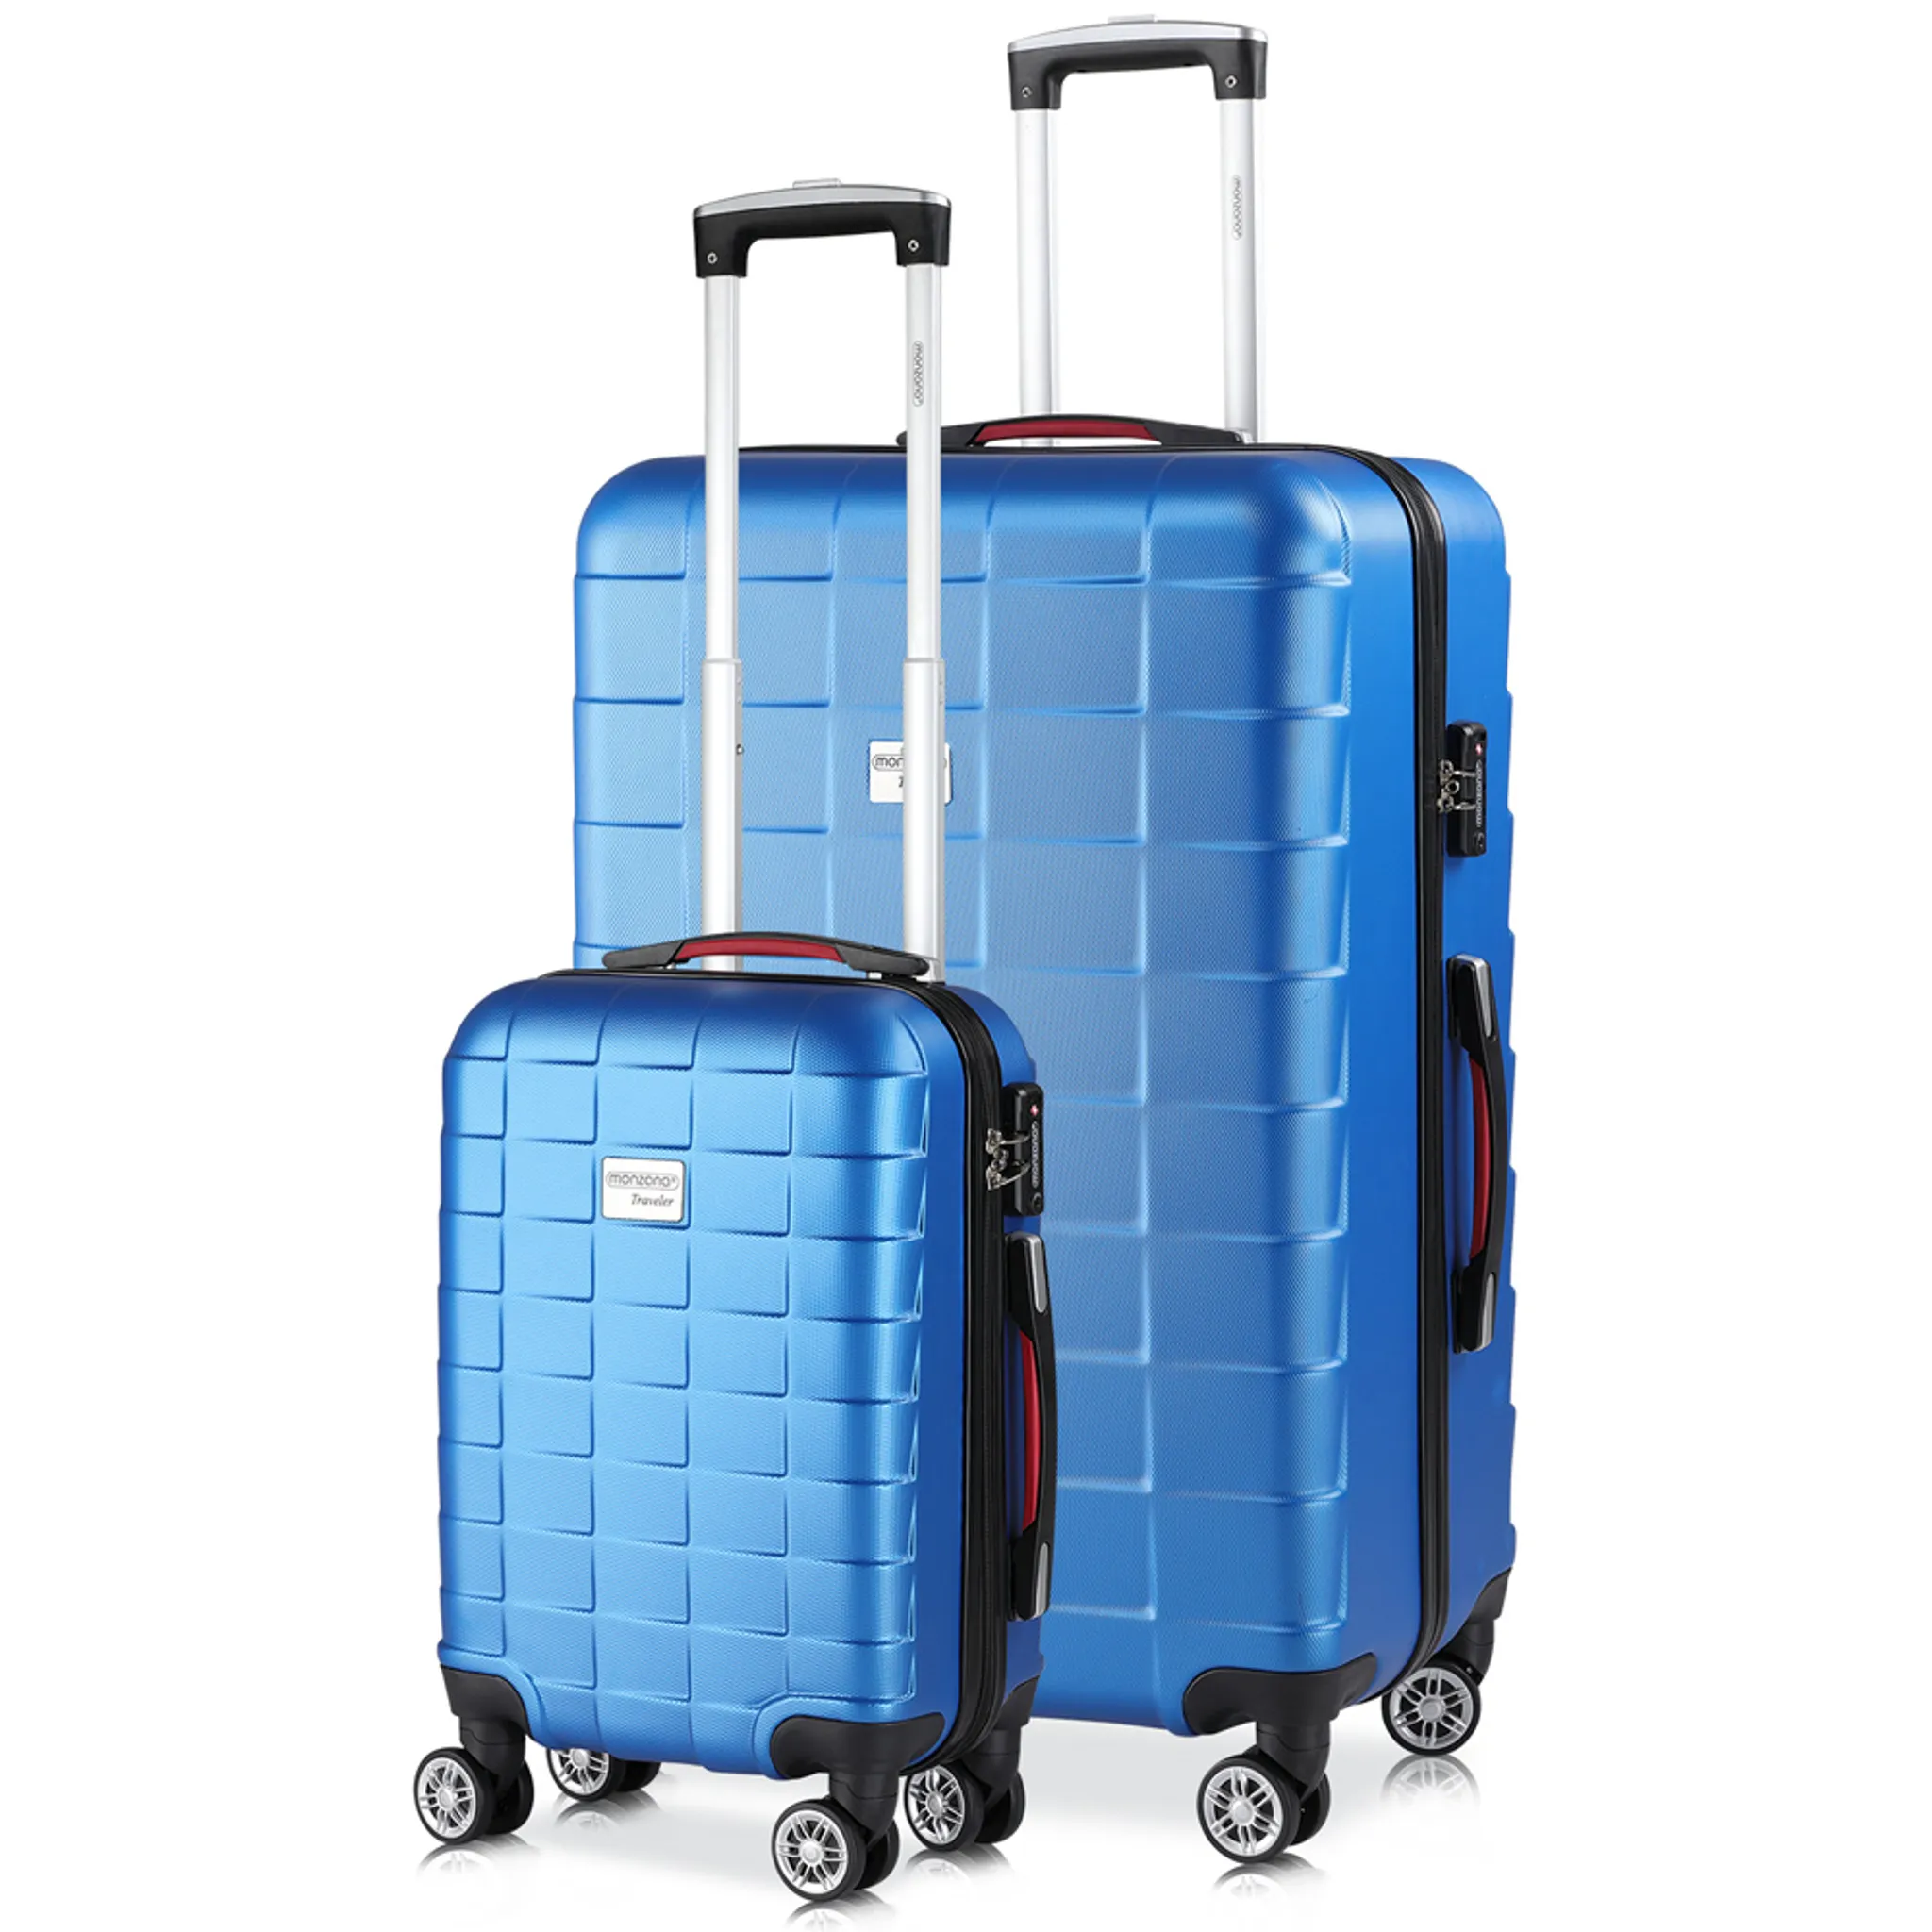 Arebos Premium Hartschalen Koffer Rollkoffer Reisekoffer Vergrößerbares Gepäck Handgepäck aus ABS Material mit TSA-Schloss und 4 Rollen blau, L 